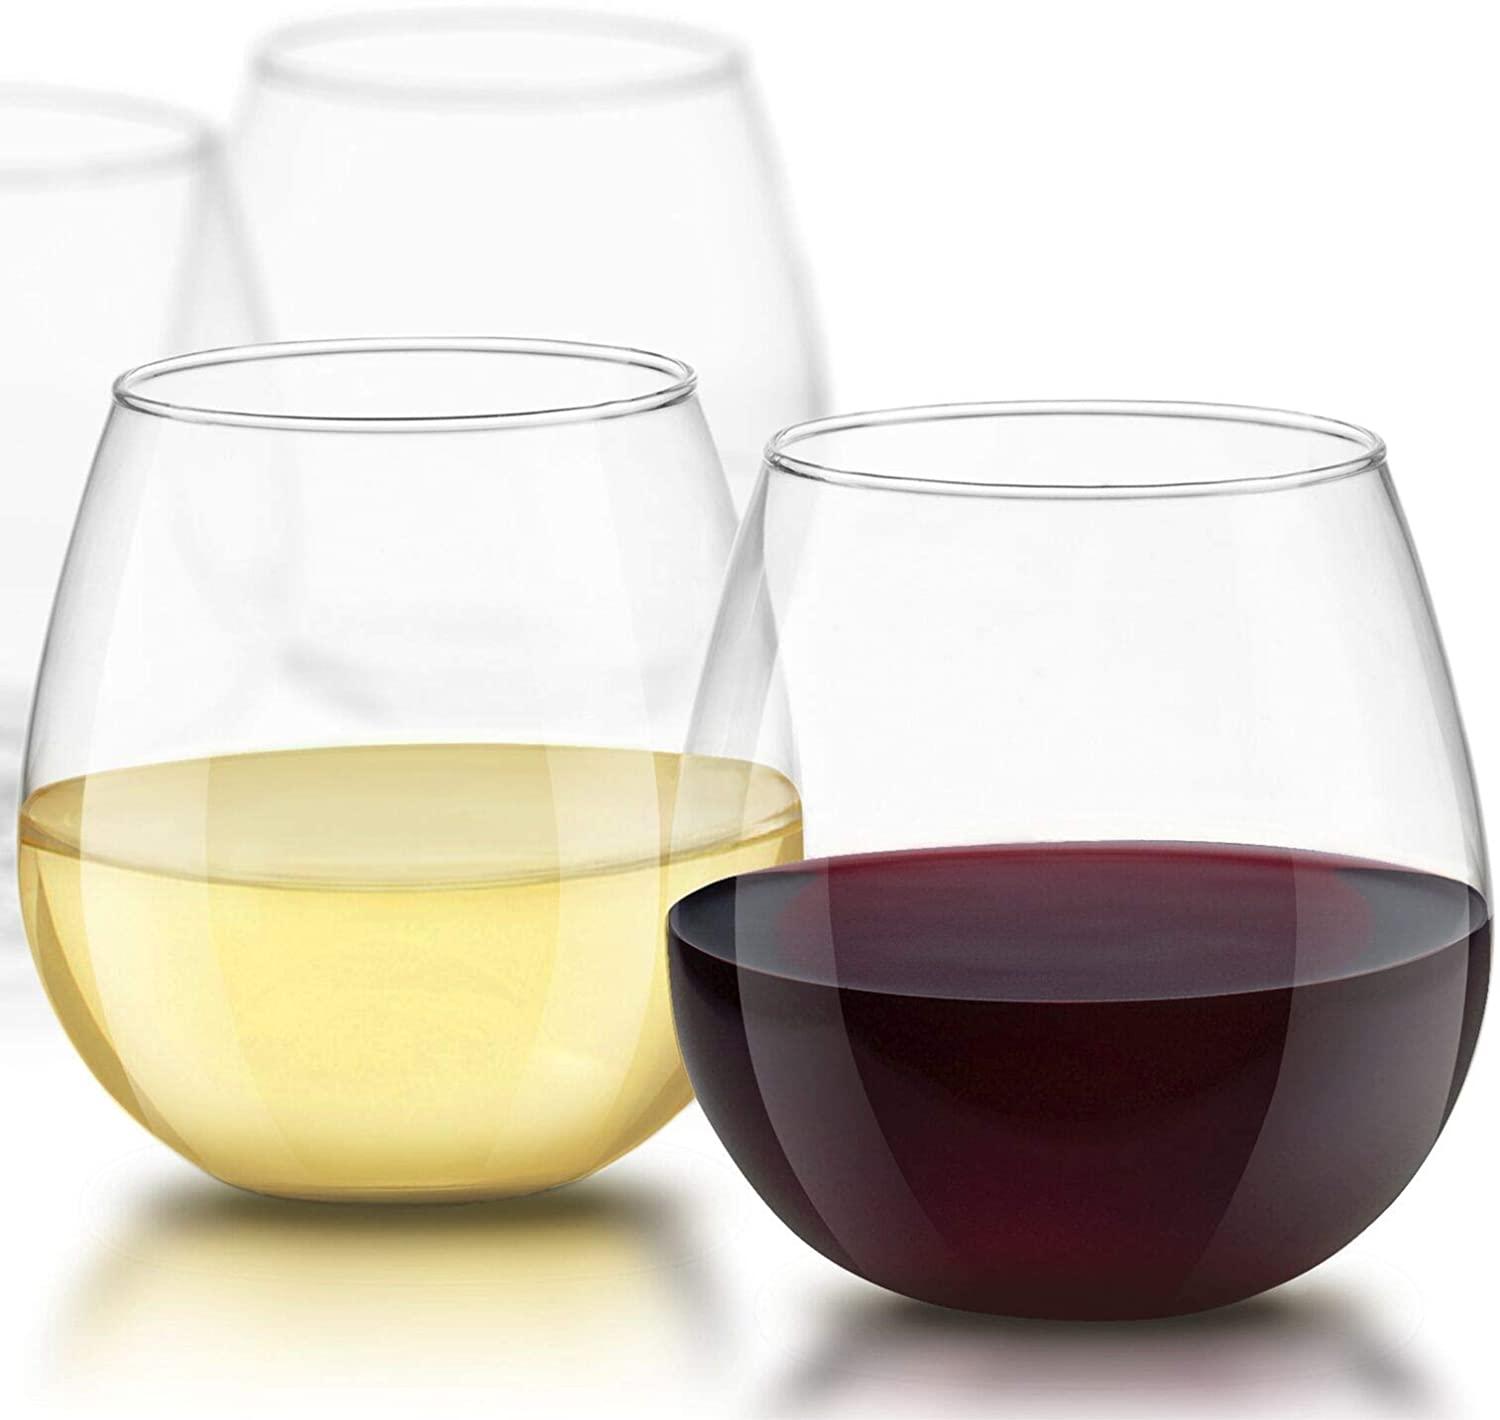 JoyJolt Spirits Stemless Wine Glasses for $12.92